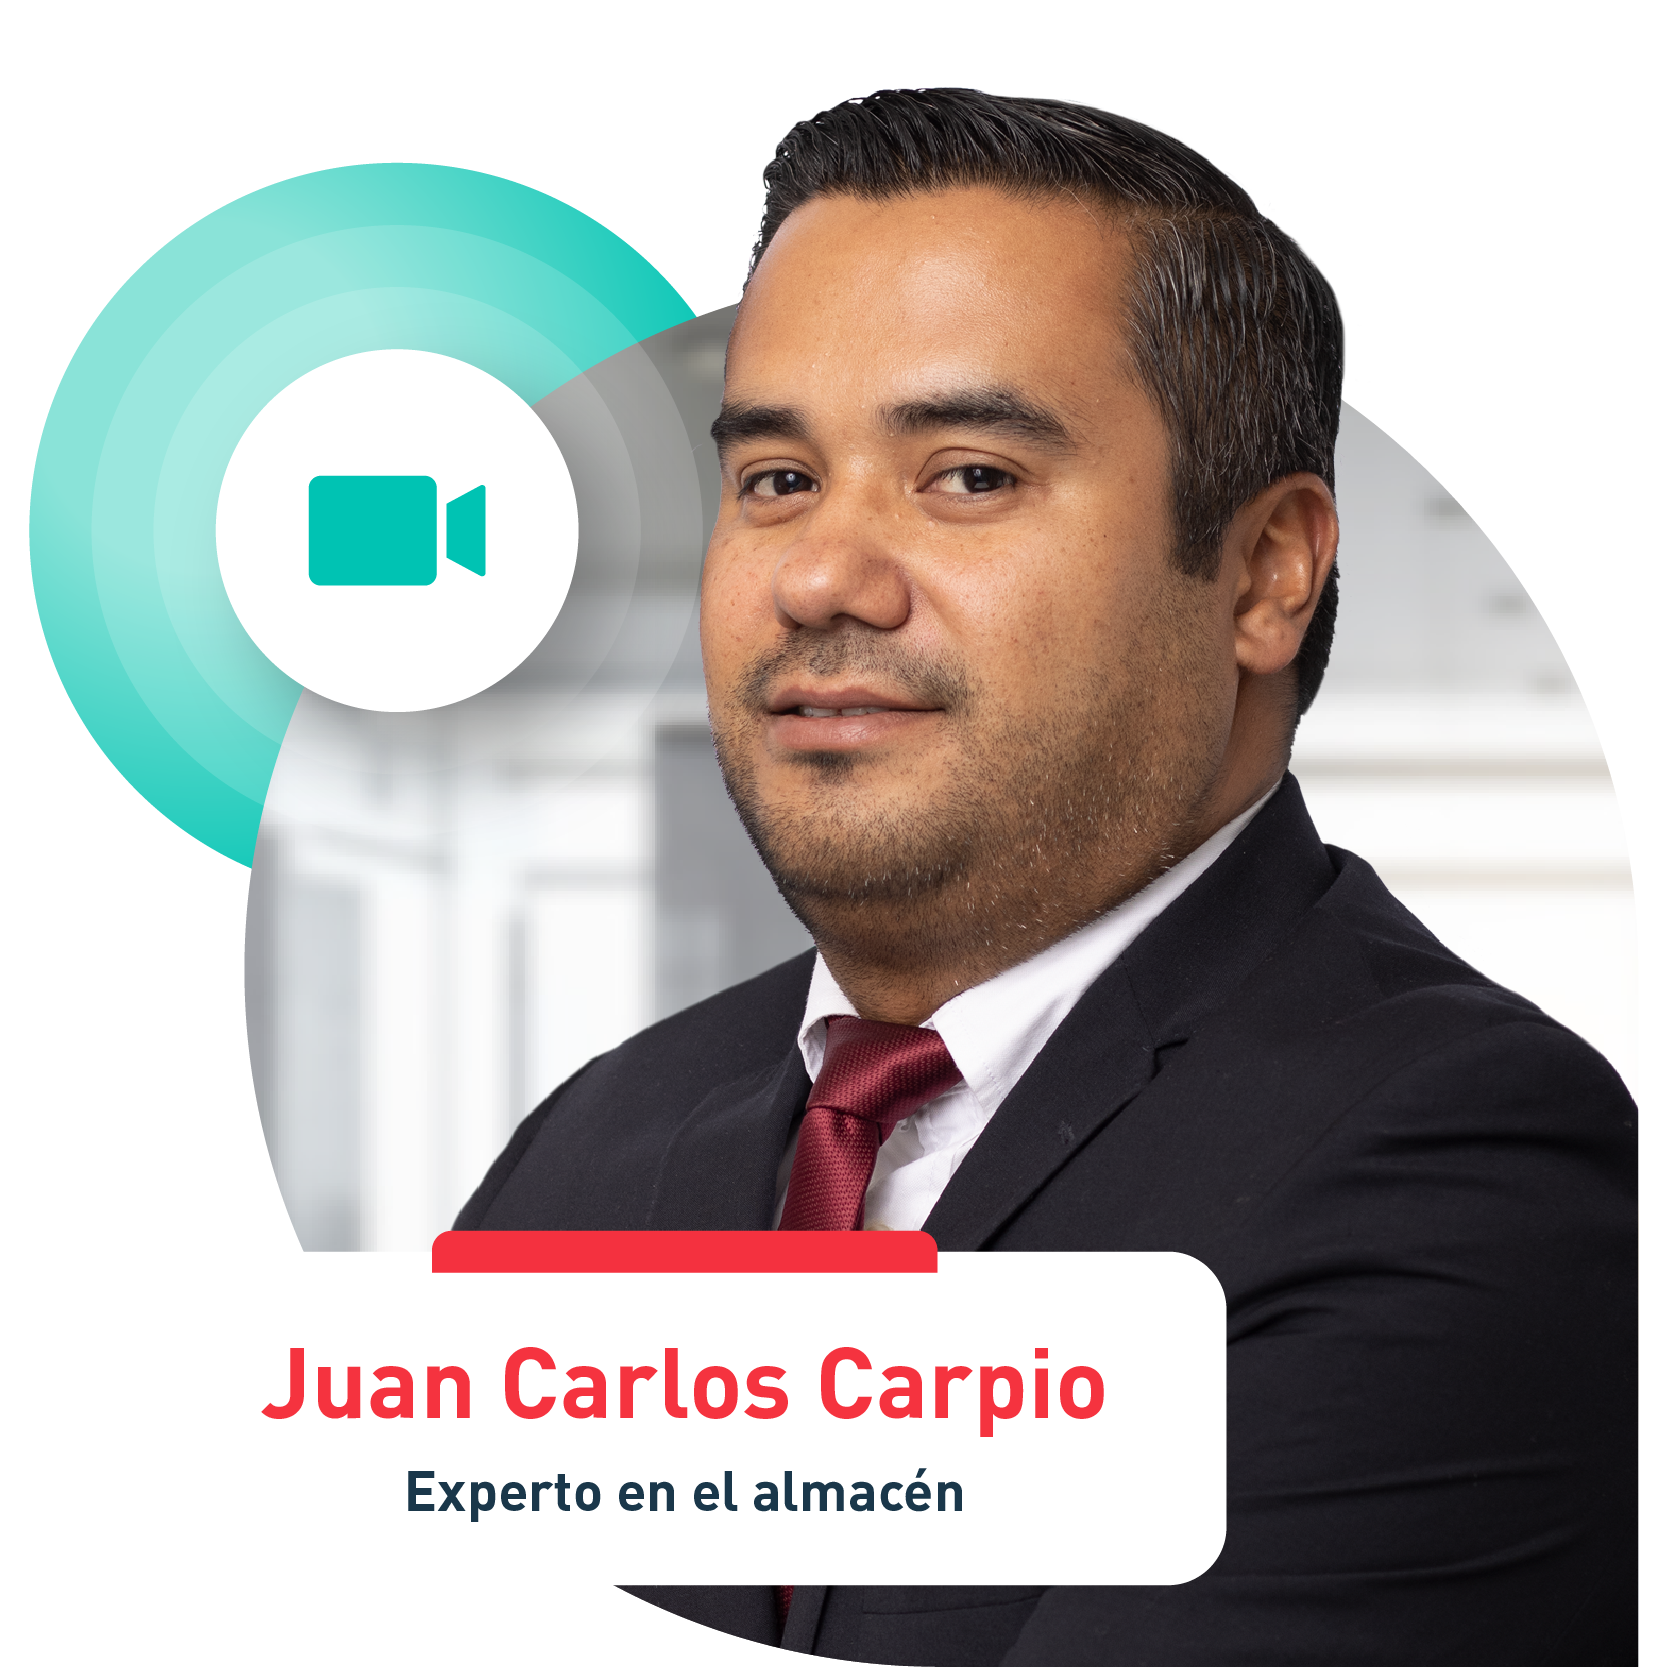 Juan Carlos Carpio